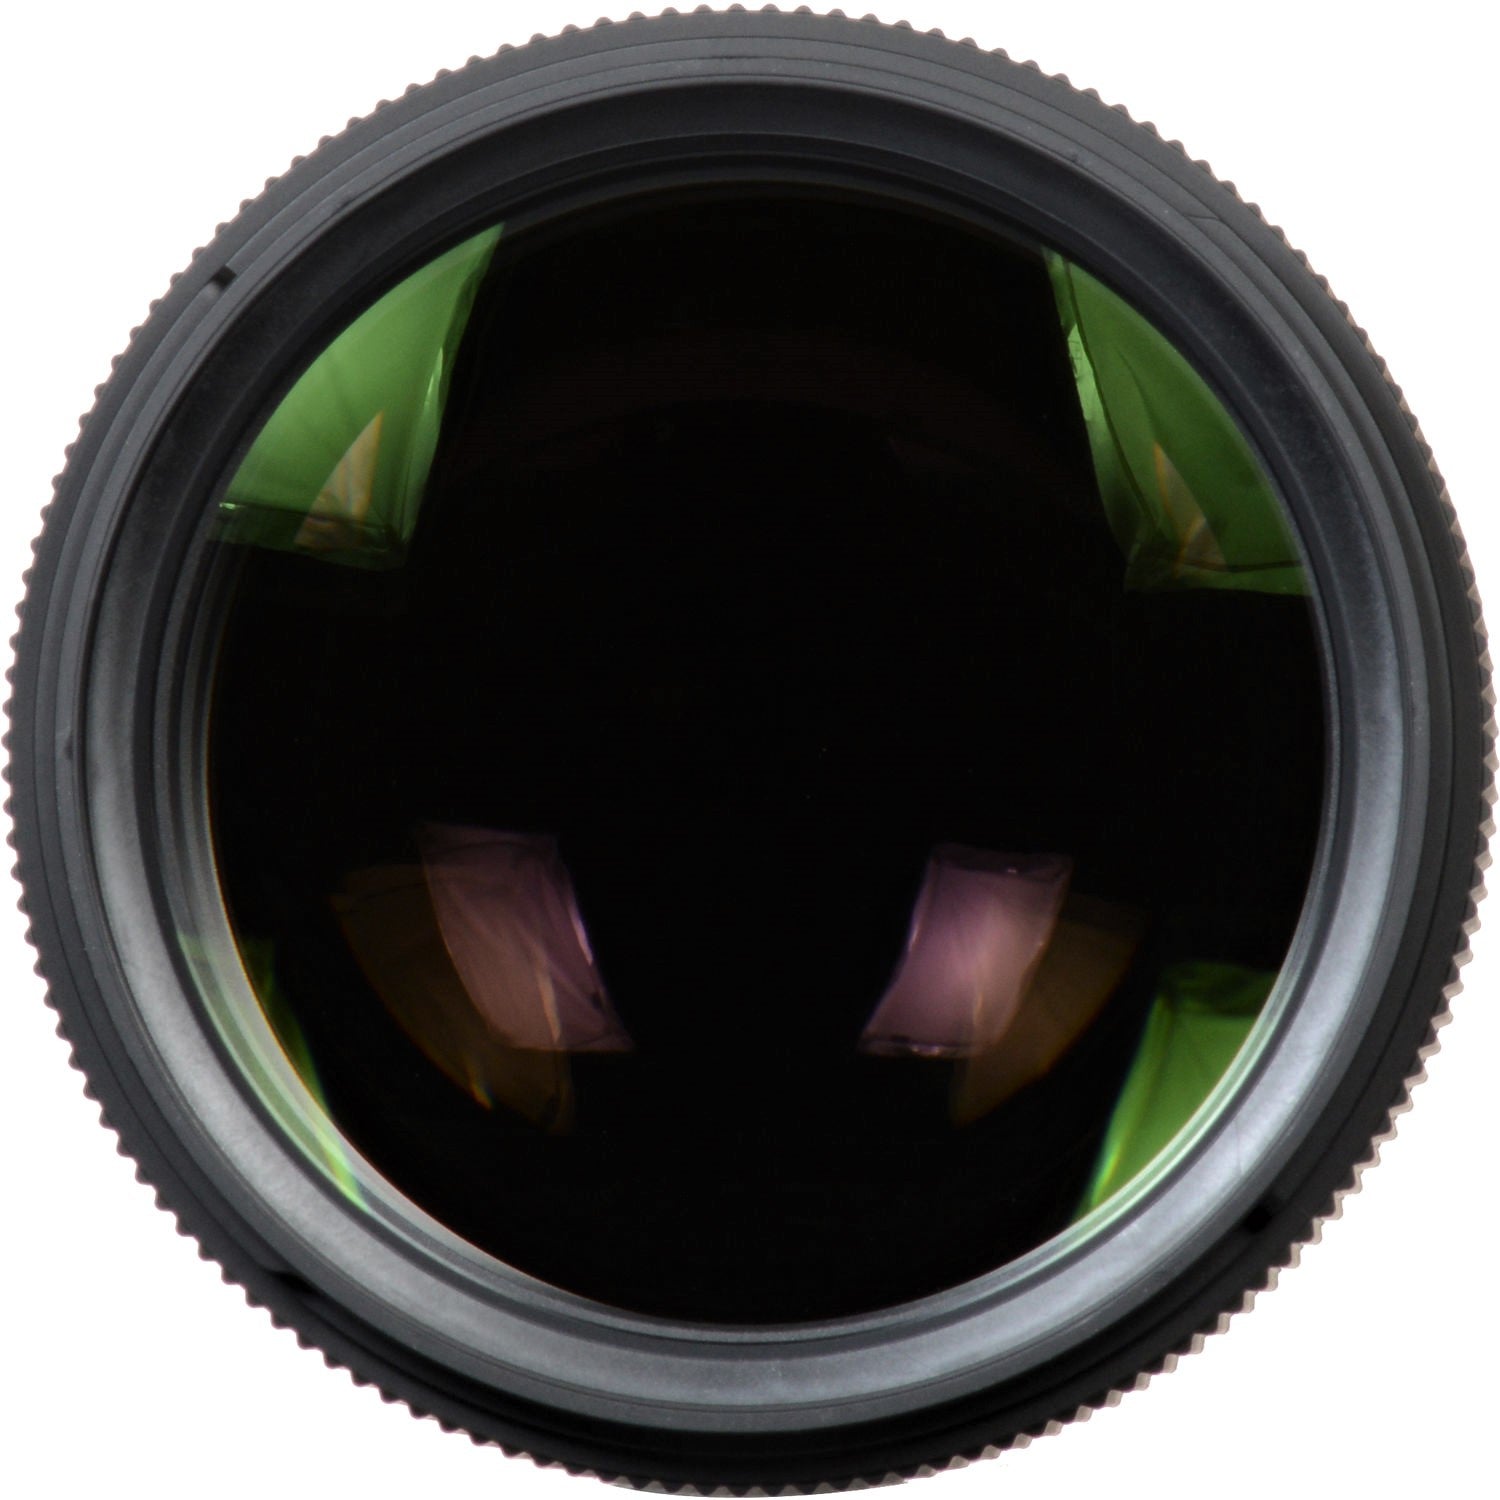 Sigma 135mm F1.8 DG HSM Art Lens for Sony E